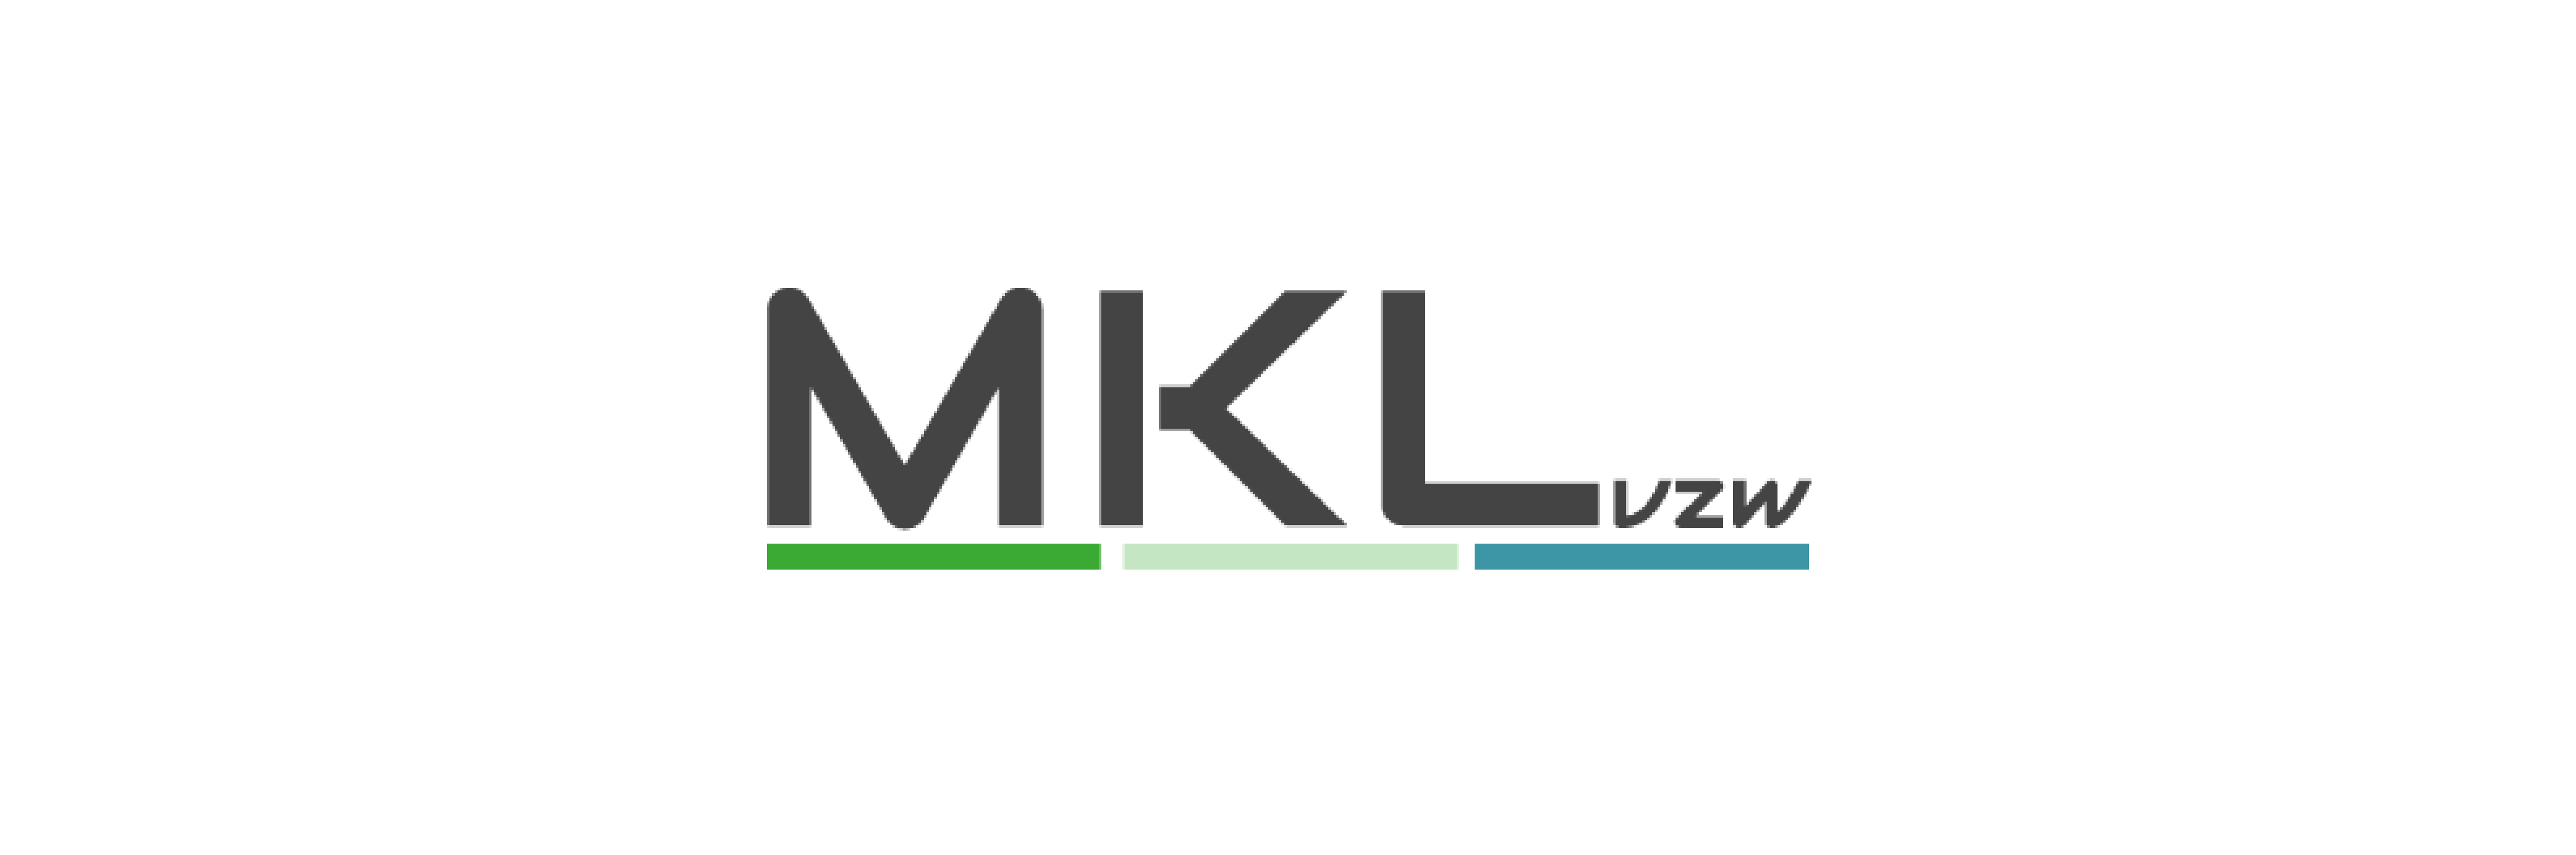 partner-logos_MKL